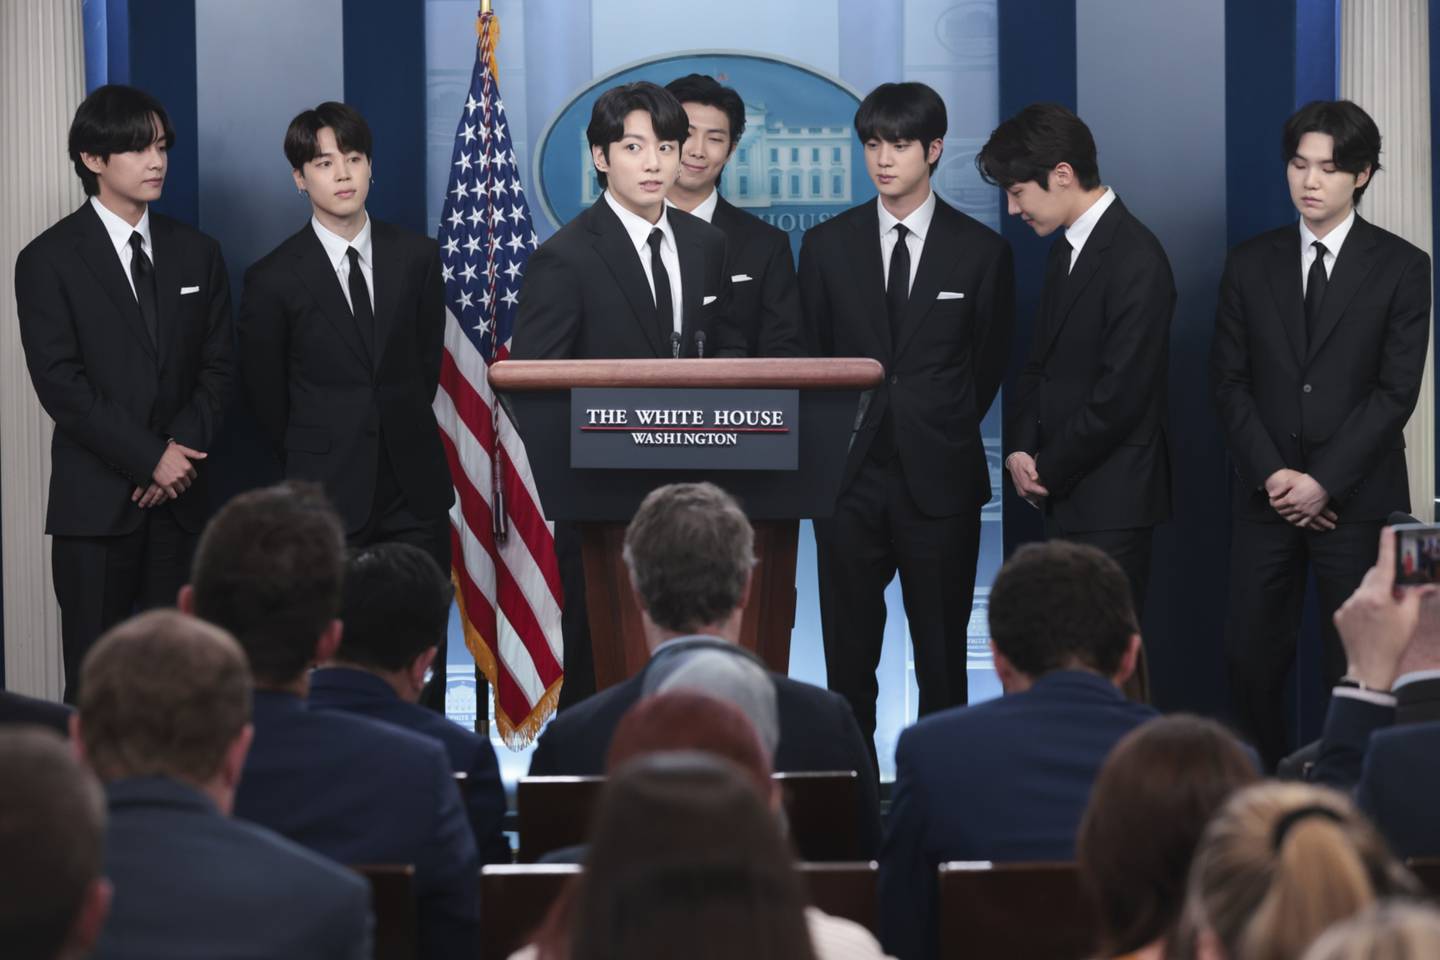 Los integrantes de la banda BTS en conferencia de prensa en la Casa Blanca.dfd